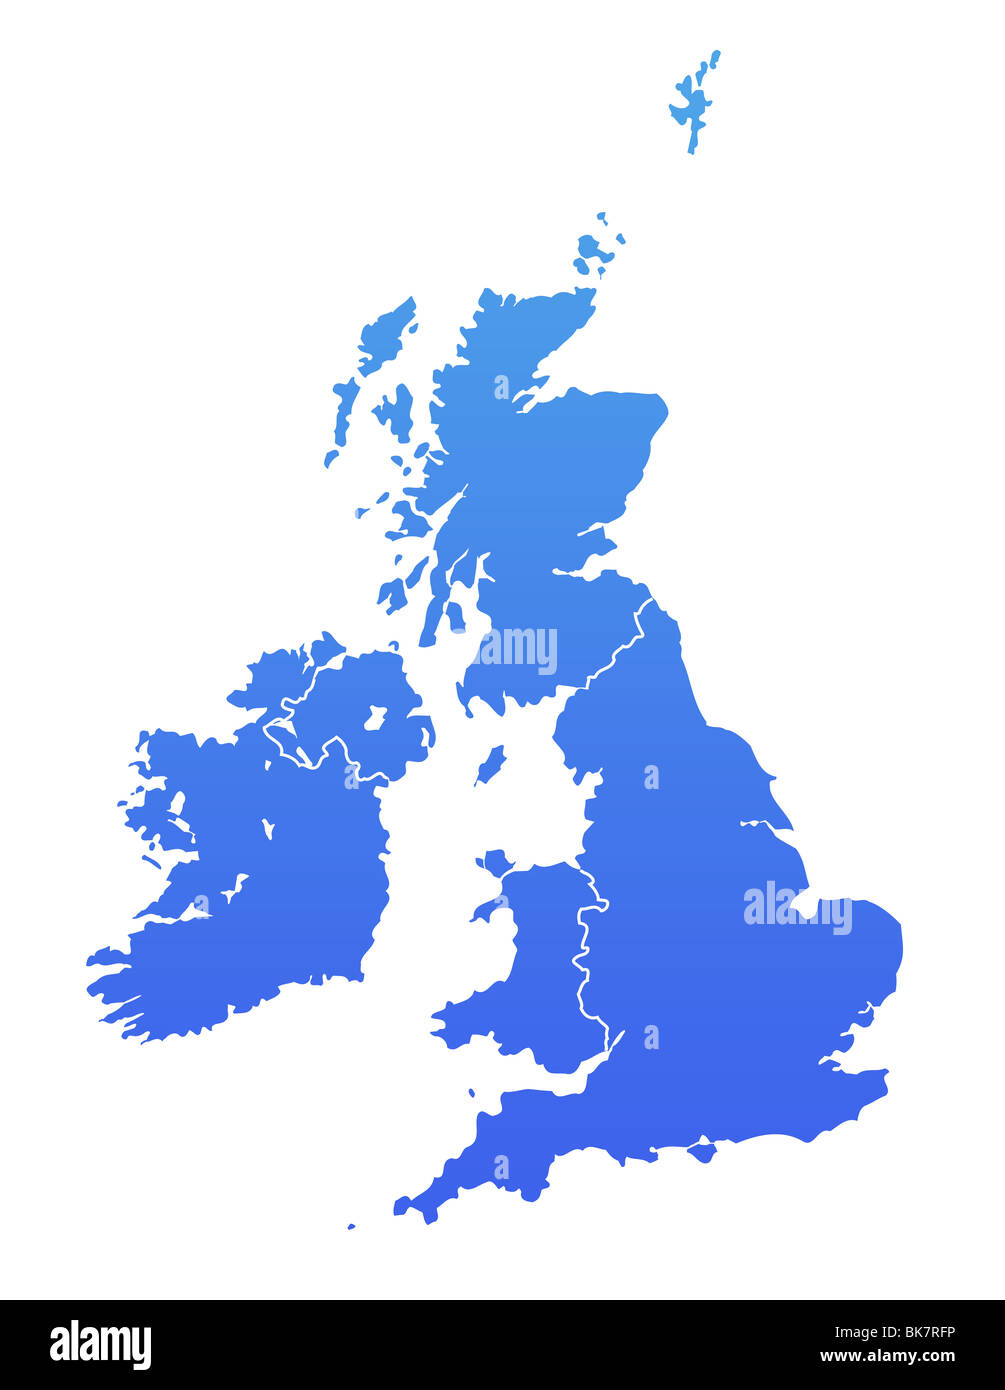 sol codo Interesante Mapa del Reino Unido en degradado azul, aislado sobre fondo blanco  Fotografía de stock - Alamy